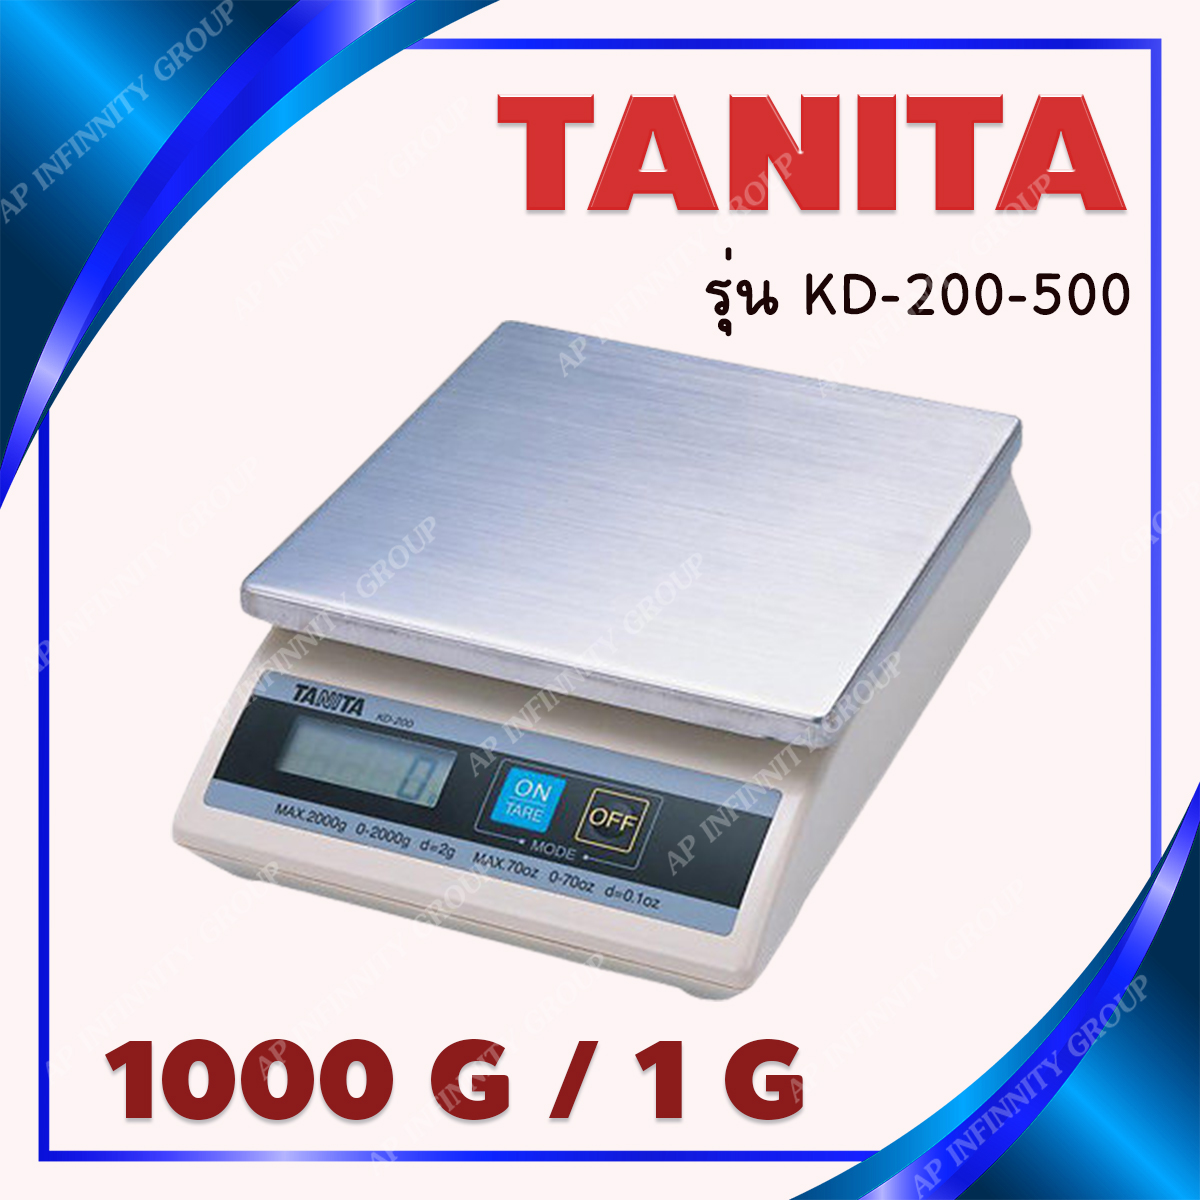 ตาชั่งดิจิตอล เครื่องชั่งดิจิตอล เครื่องชั่งแบบตั้งโต๊ะ รุ่น KD-200-100 ยี่ห้อ TANITA พิกัดน้ำหนัก 1000 กรัม (1 กิโลกรัม) รูปที่ 1